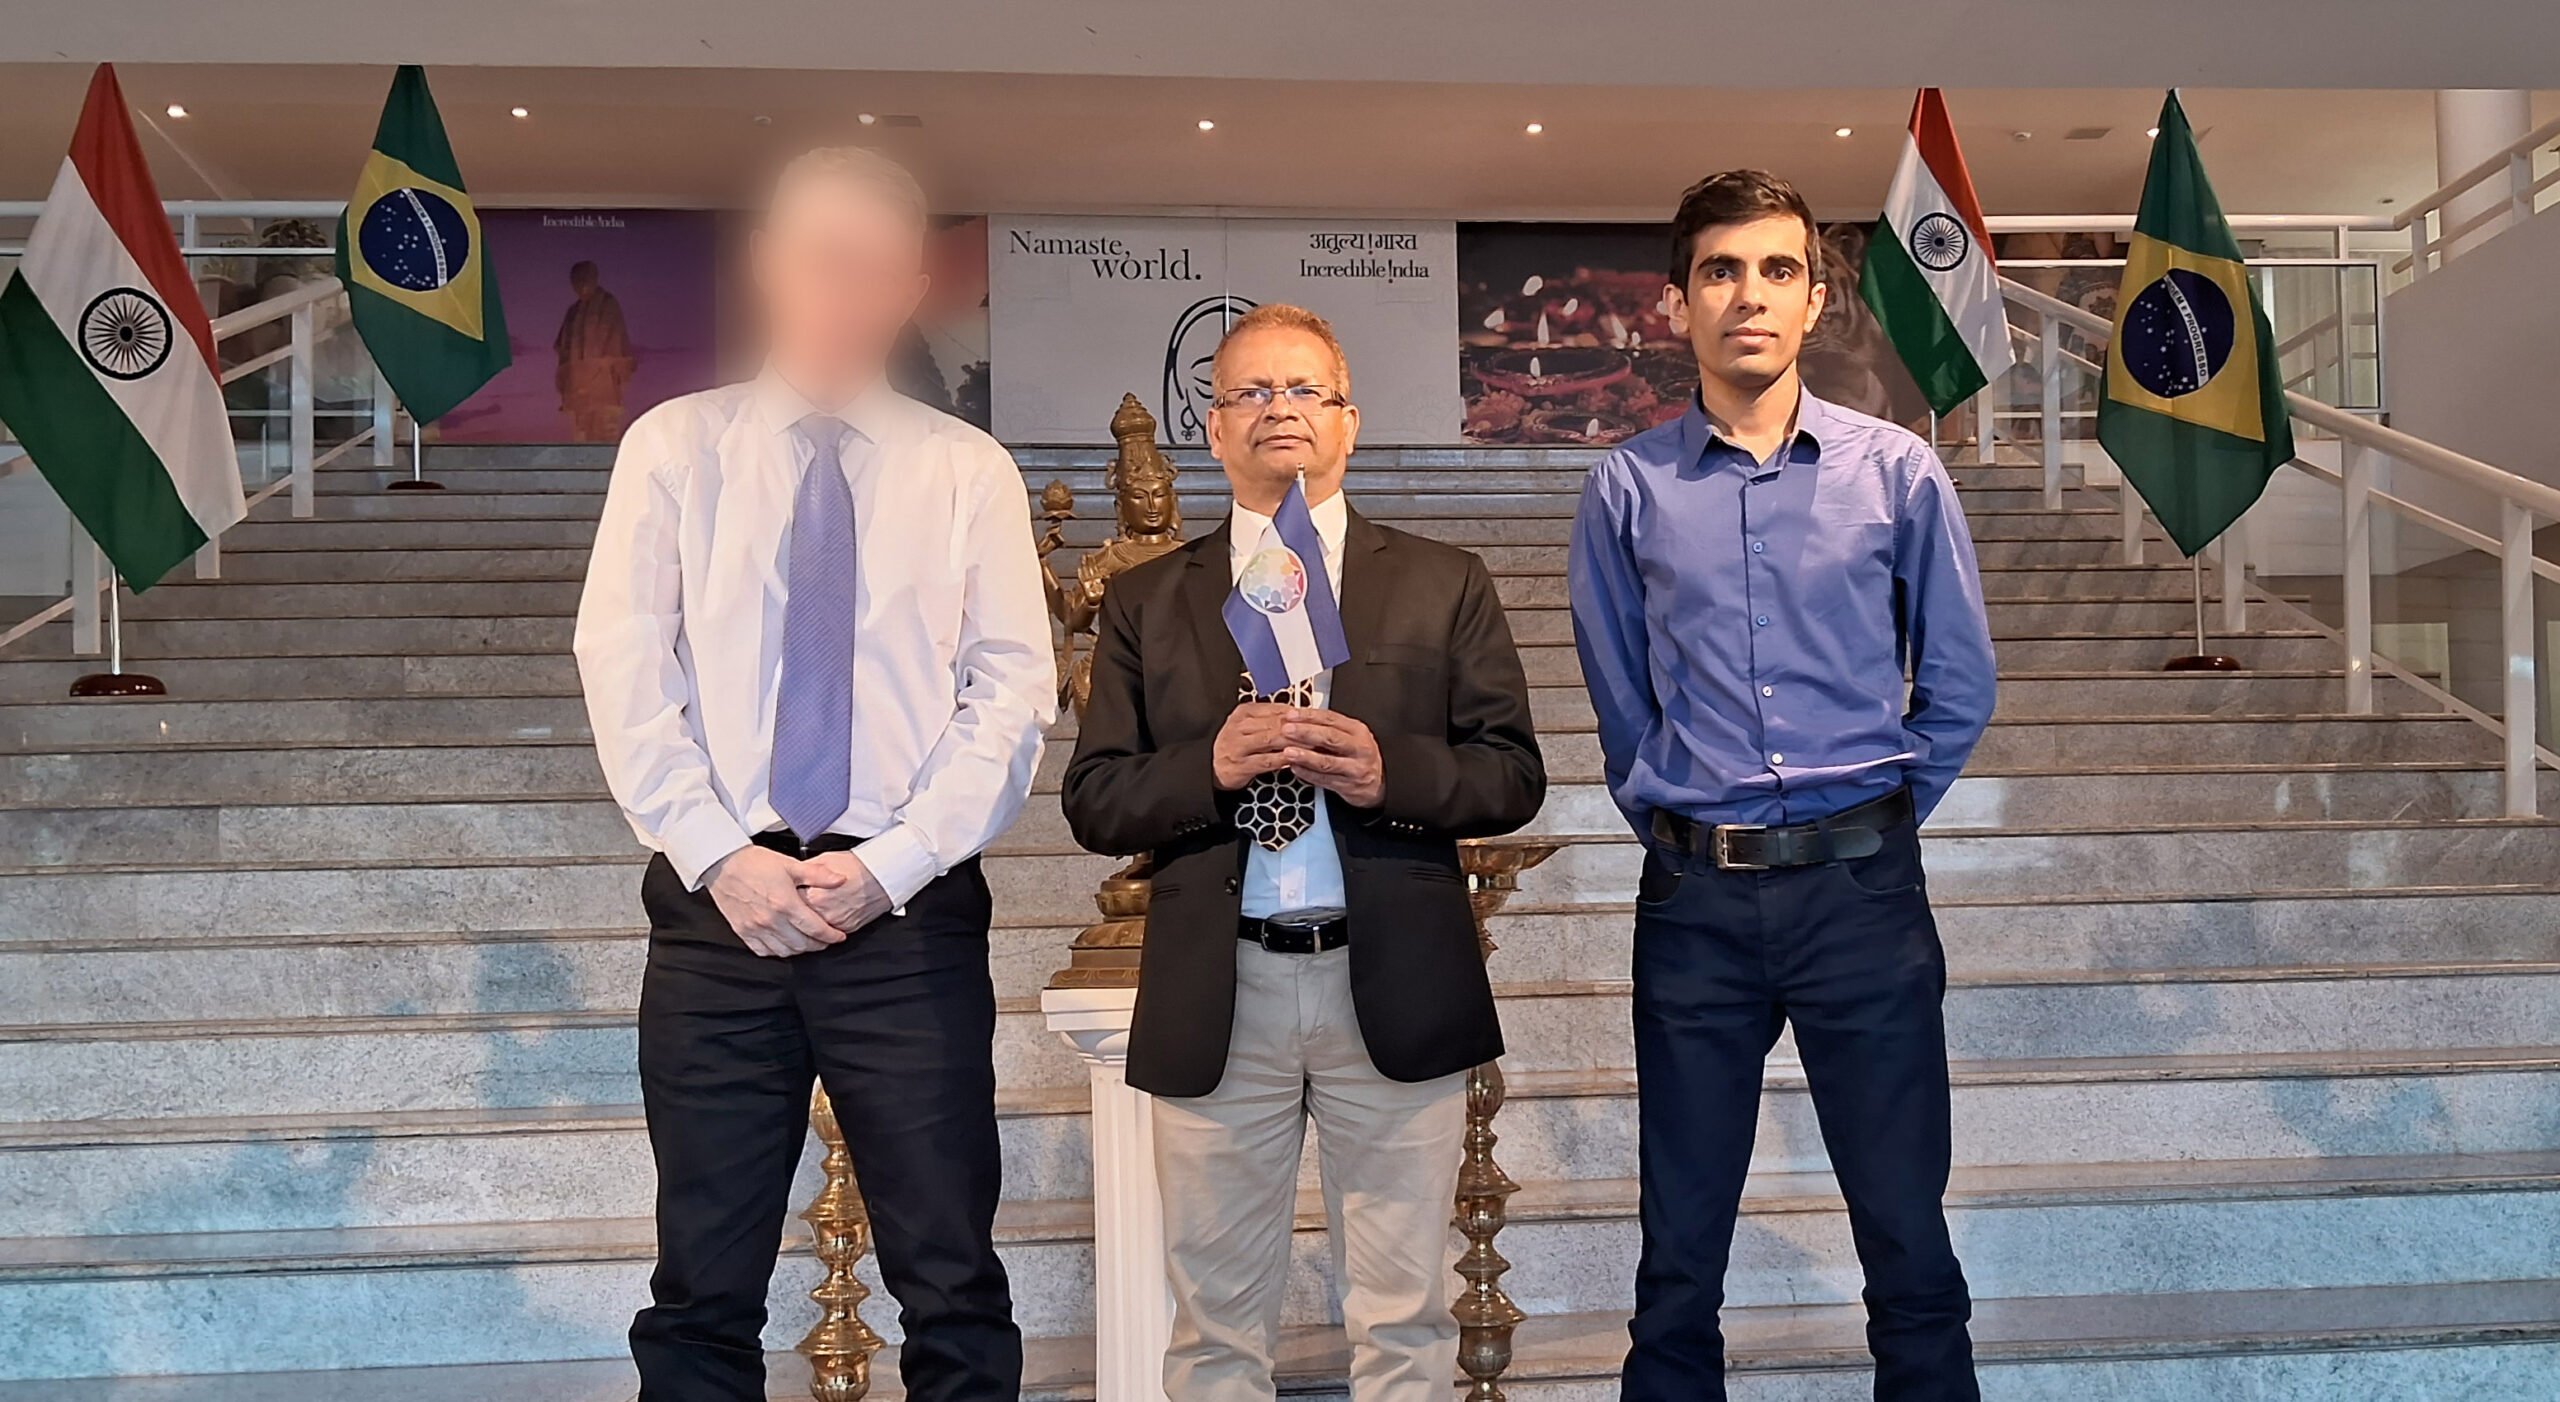 Son Excellence l'Ambassadeur adjoint de l'Inde à Brasilia, tenant le drapeau de l'Autistan à l'ambassade de l'Inde. (Sur la gauche, le fondateur de l'Organisation Diplomatique de l'Autistan (qui ne souhaite pas être exposé publiquement), et à droite, son assistant.)